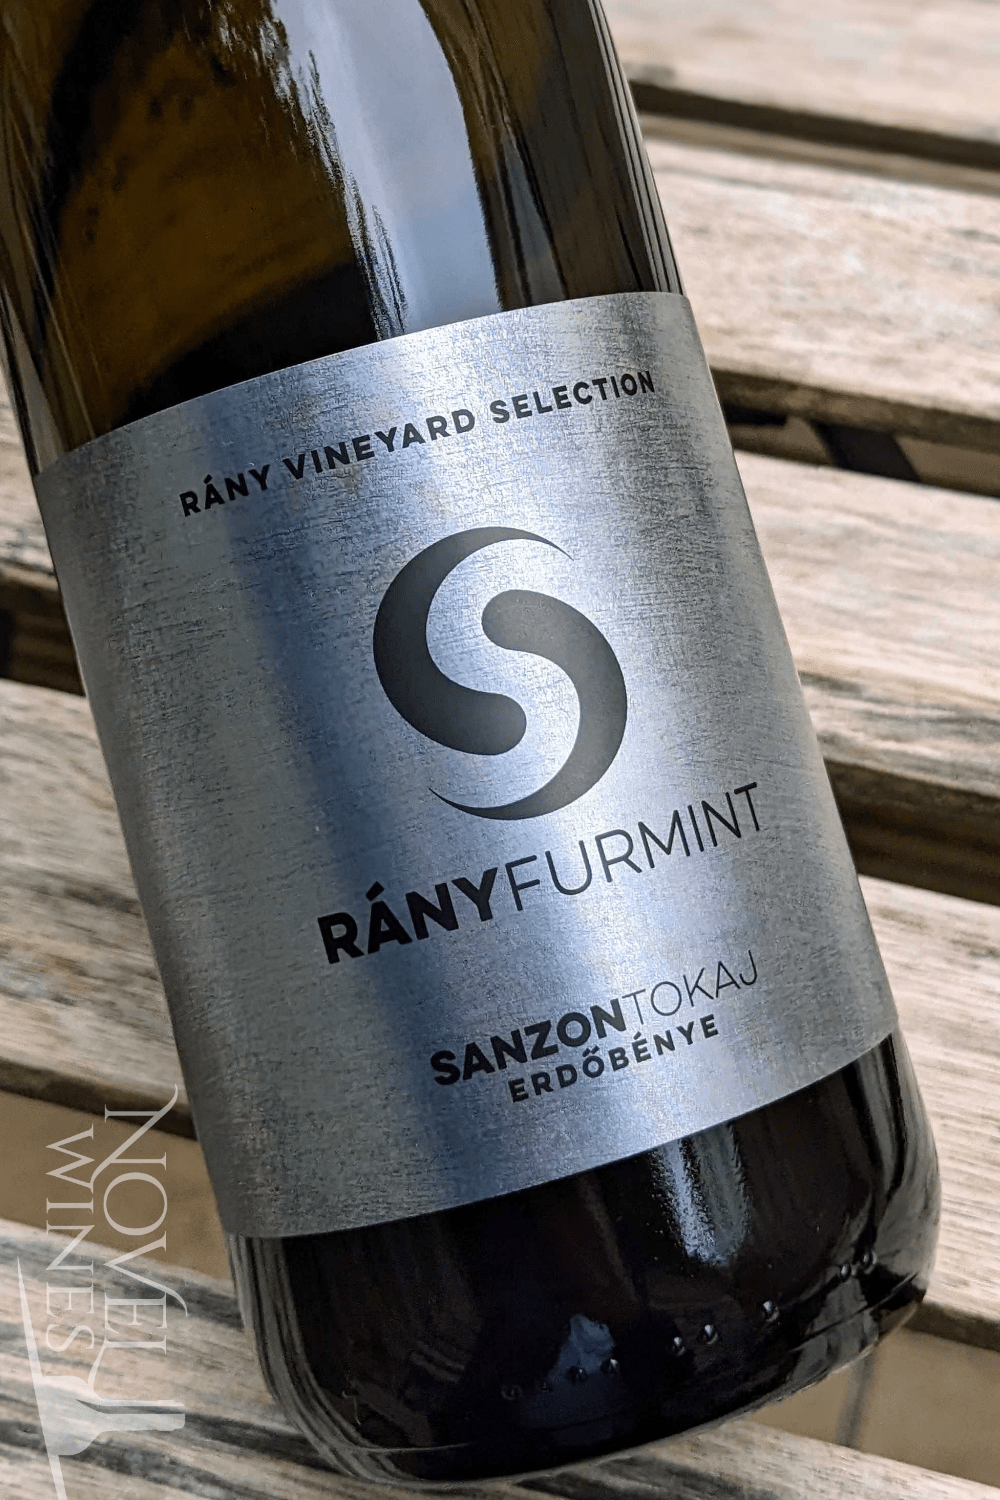 Sanzon Tokaj White Wine SanzonTokaj Furmint Rany Single Vineyard 2018, Hungary